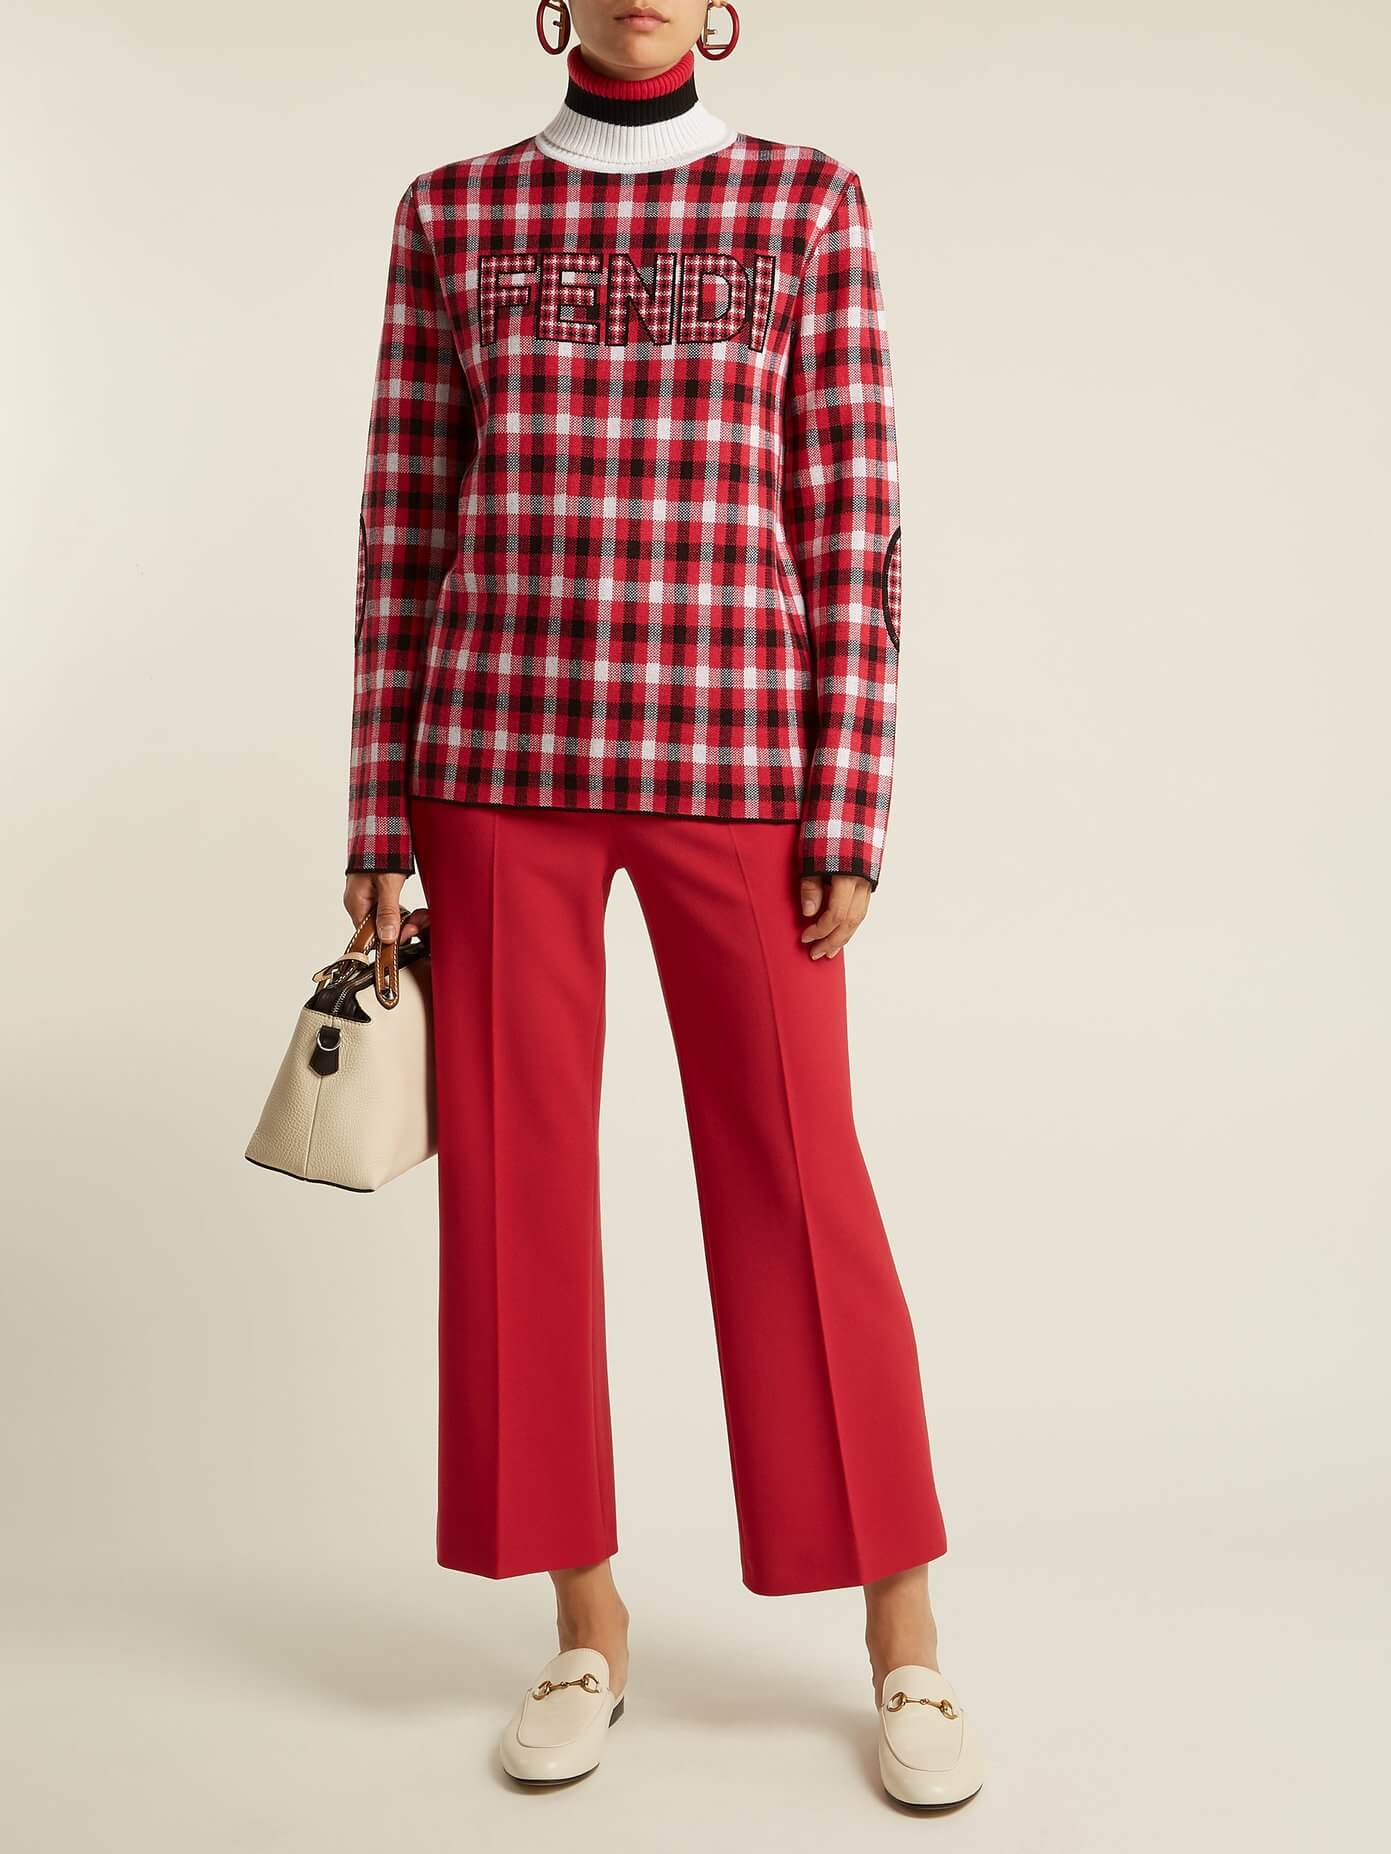 Пуловер Fendi размер XS, цвет Красный, фото 3